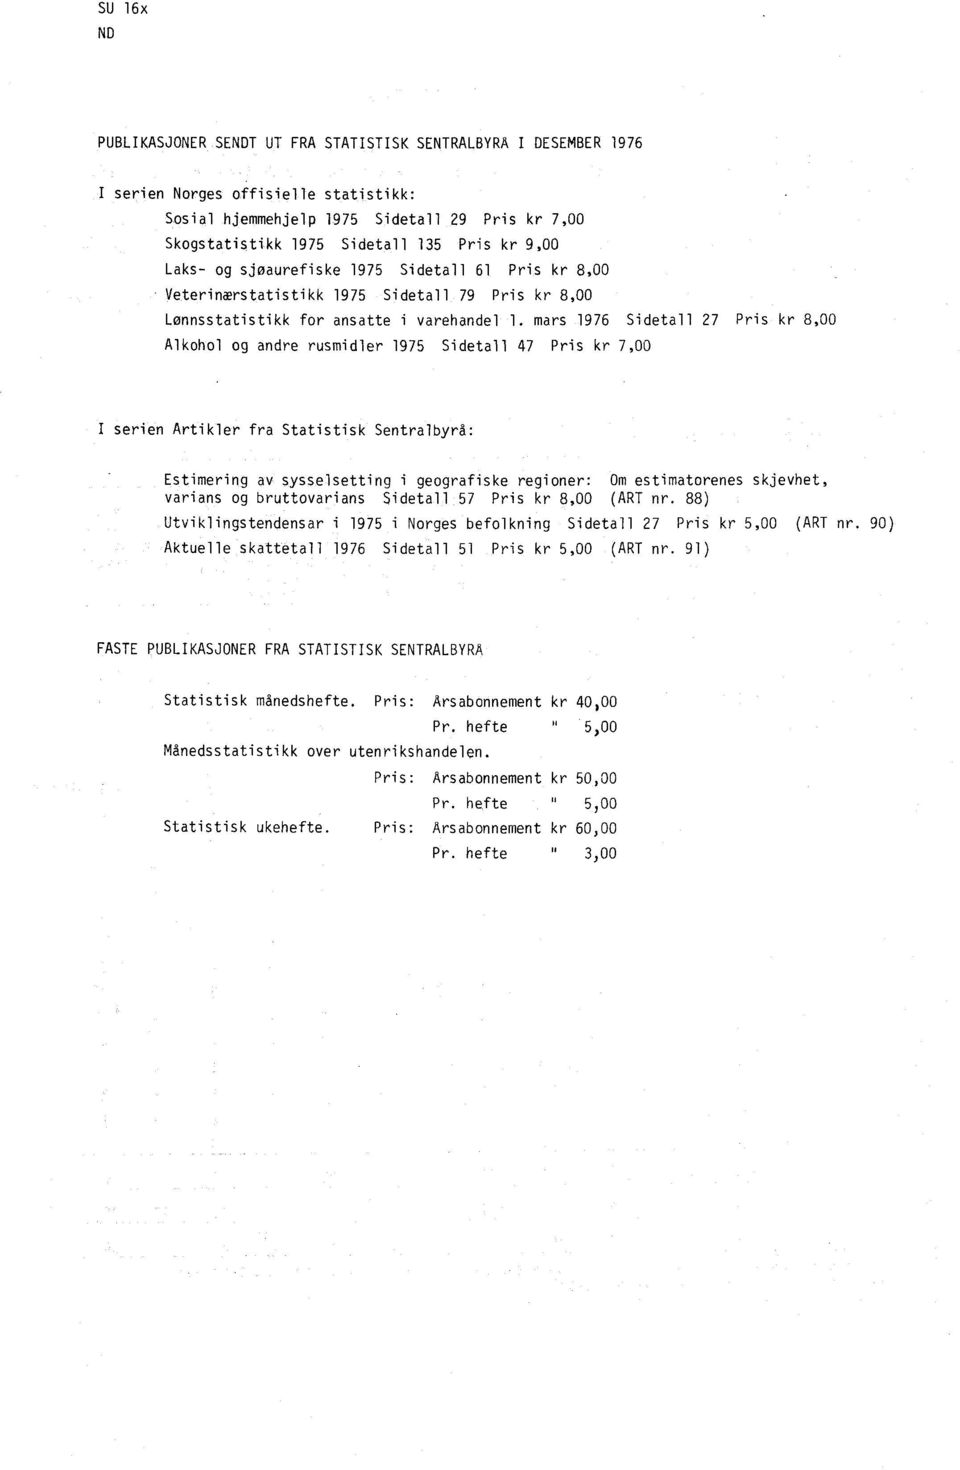 mars 1976 Sidetall 27 Pris kr 8,00 Alkohol og andre rusmidler 1975 Sidetall 47 Pris kr 7,00 I serien Artikler fra Statistisk Sentralbyrå: Estimering av sysselsetting i geografiske regioner: Om